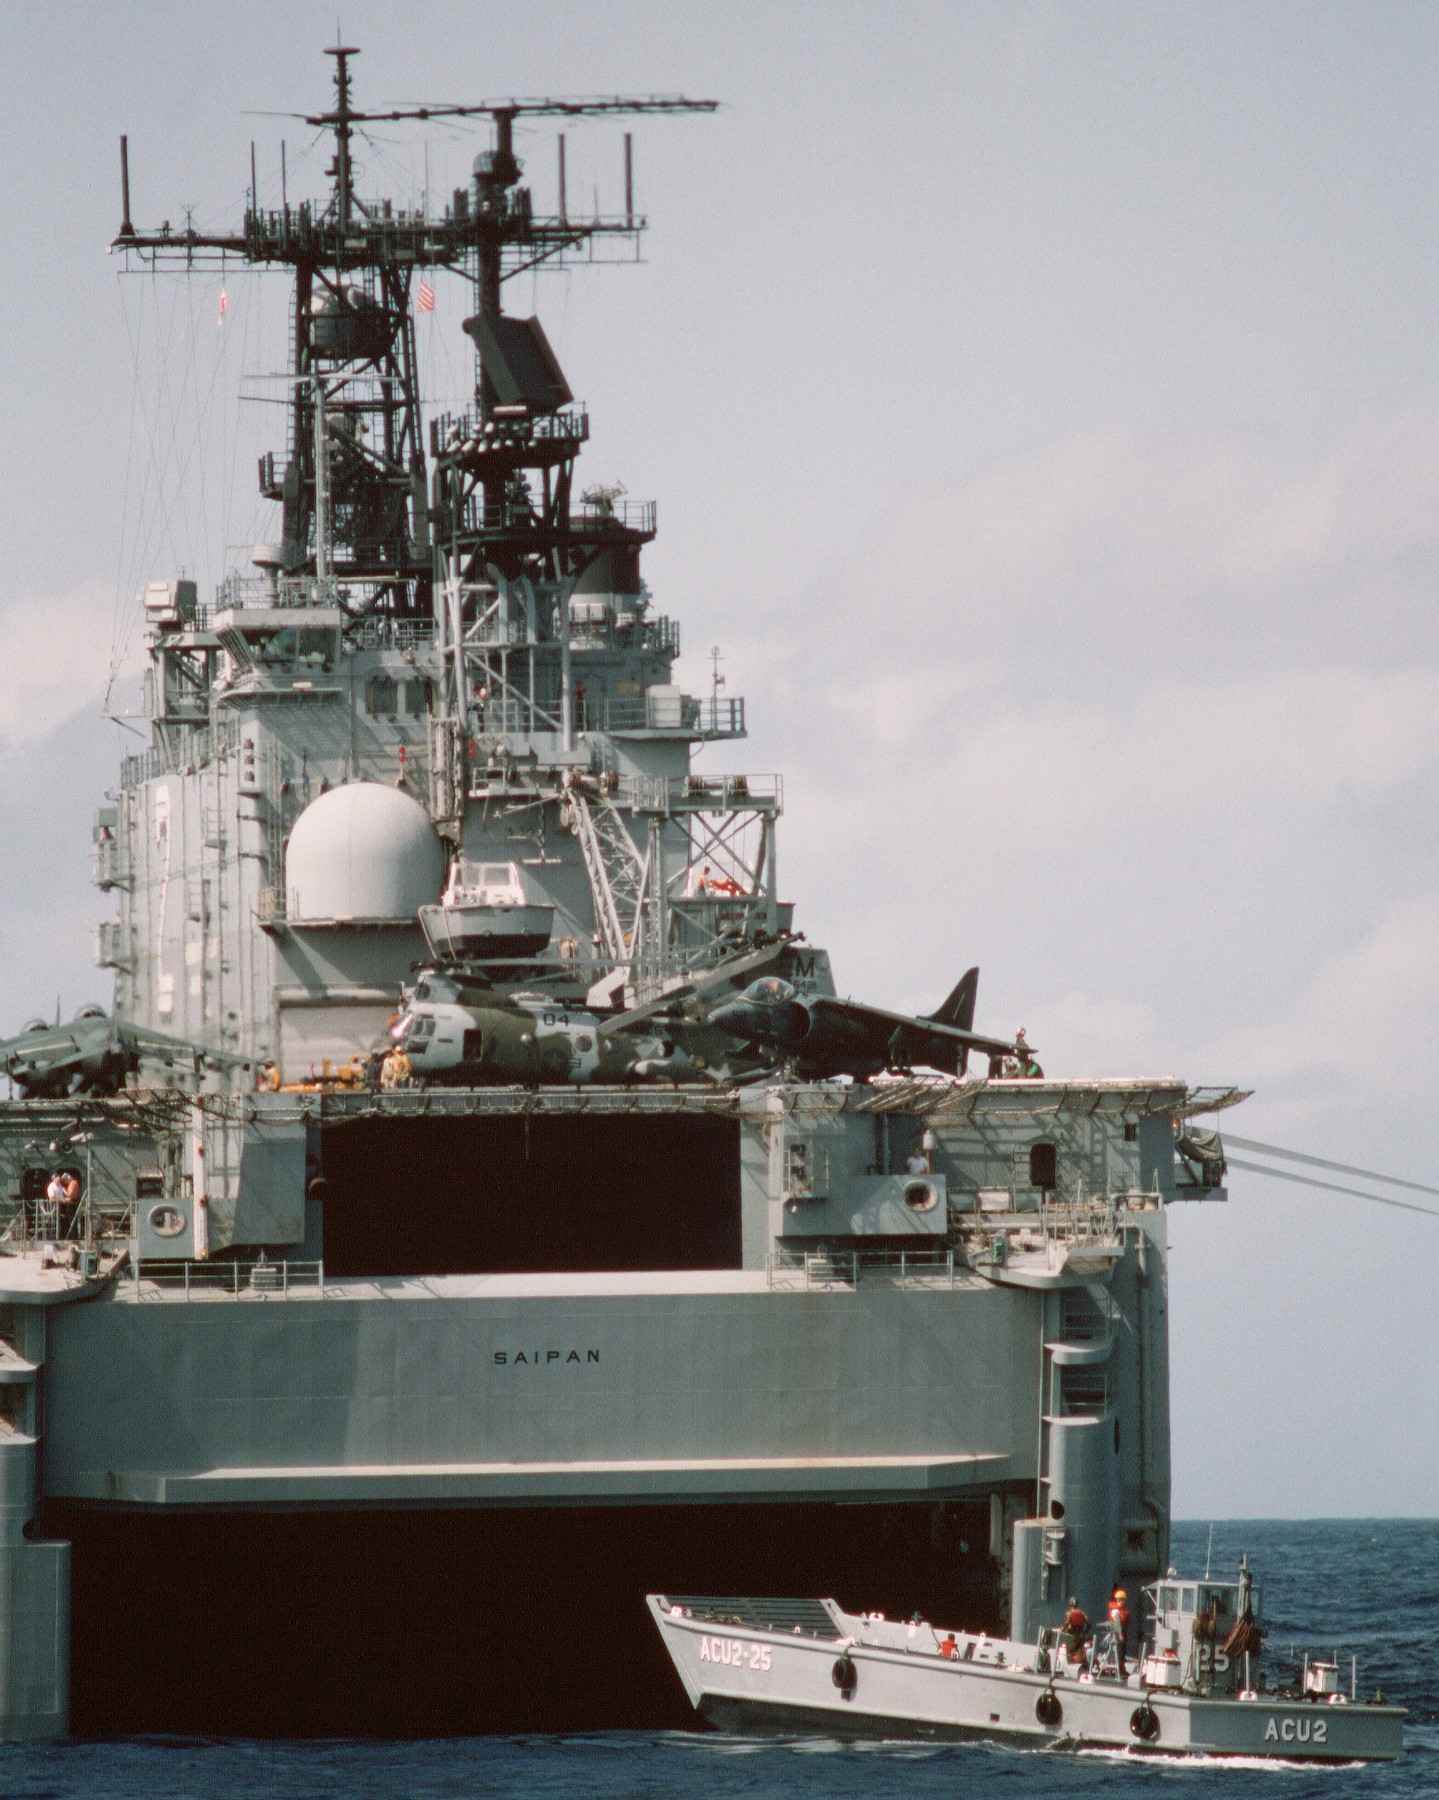 lha-2 uss saipan tarawa class amphibious assault ship us navy 22nd meu hmm-261 usmc operation sharp edge liberia 80